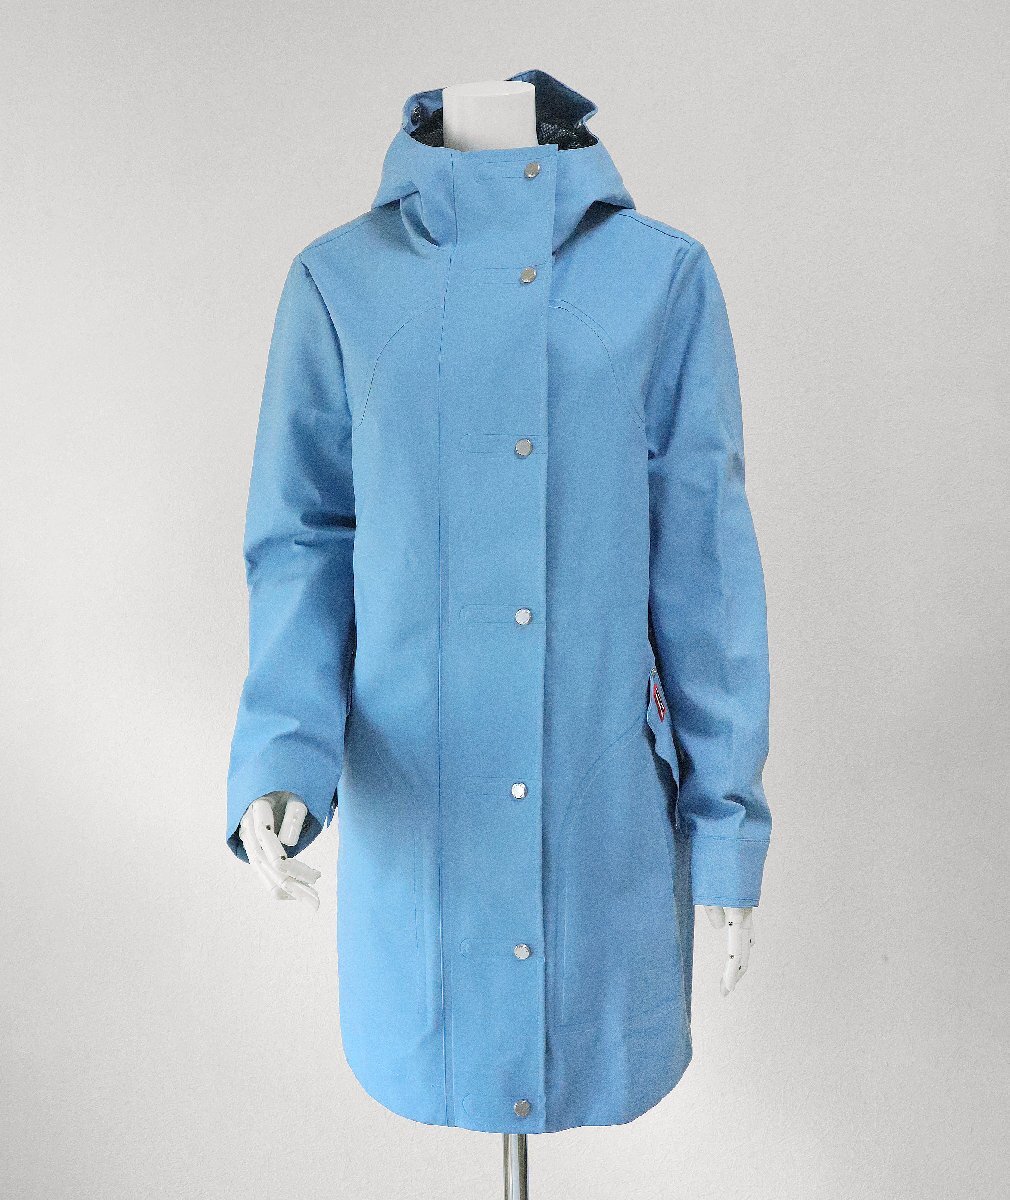 HUNTER * совершенно водонепроницаемый плащ бледный голубой S размер *W ORI R RUB HUNTING COAT* обычная цена 4.2 десять тысяч иен непромокаемая одежда Kappa Hunter *HA16